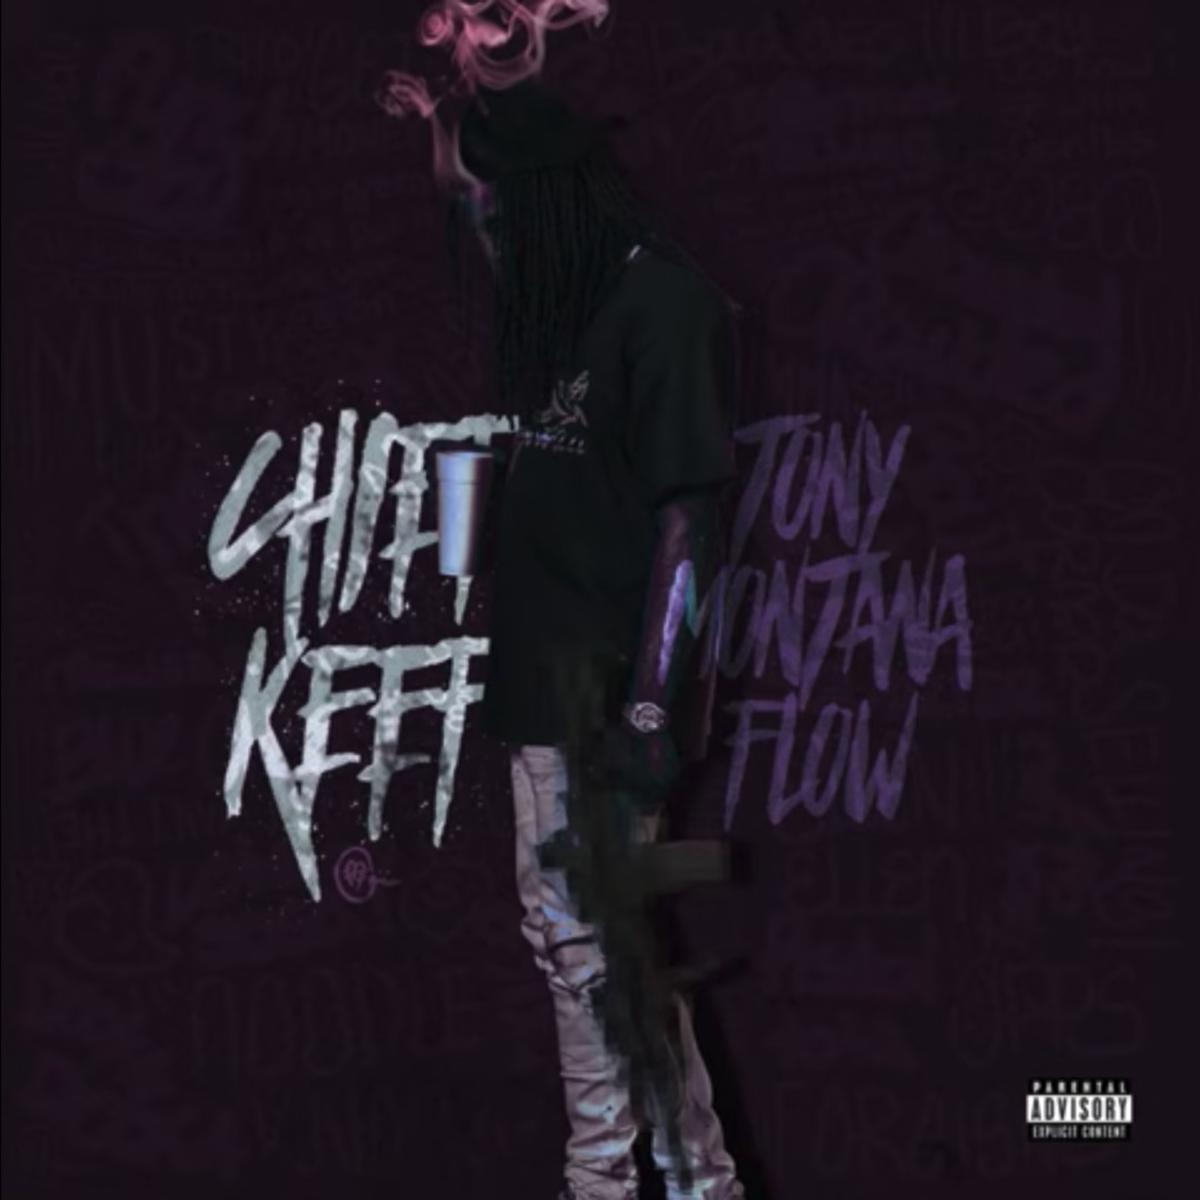 Chief Keef – “Tony Montana Flow” [Audio]